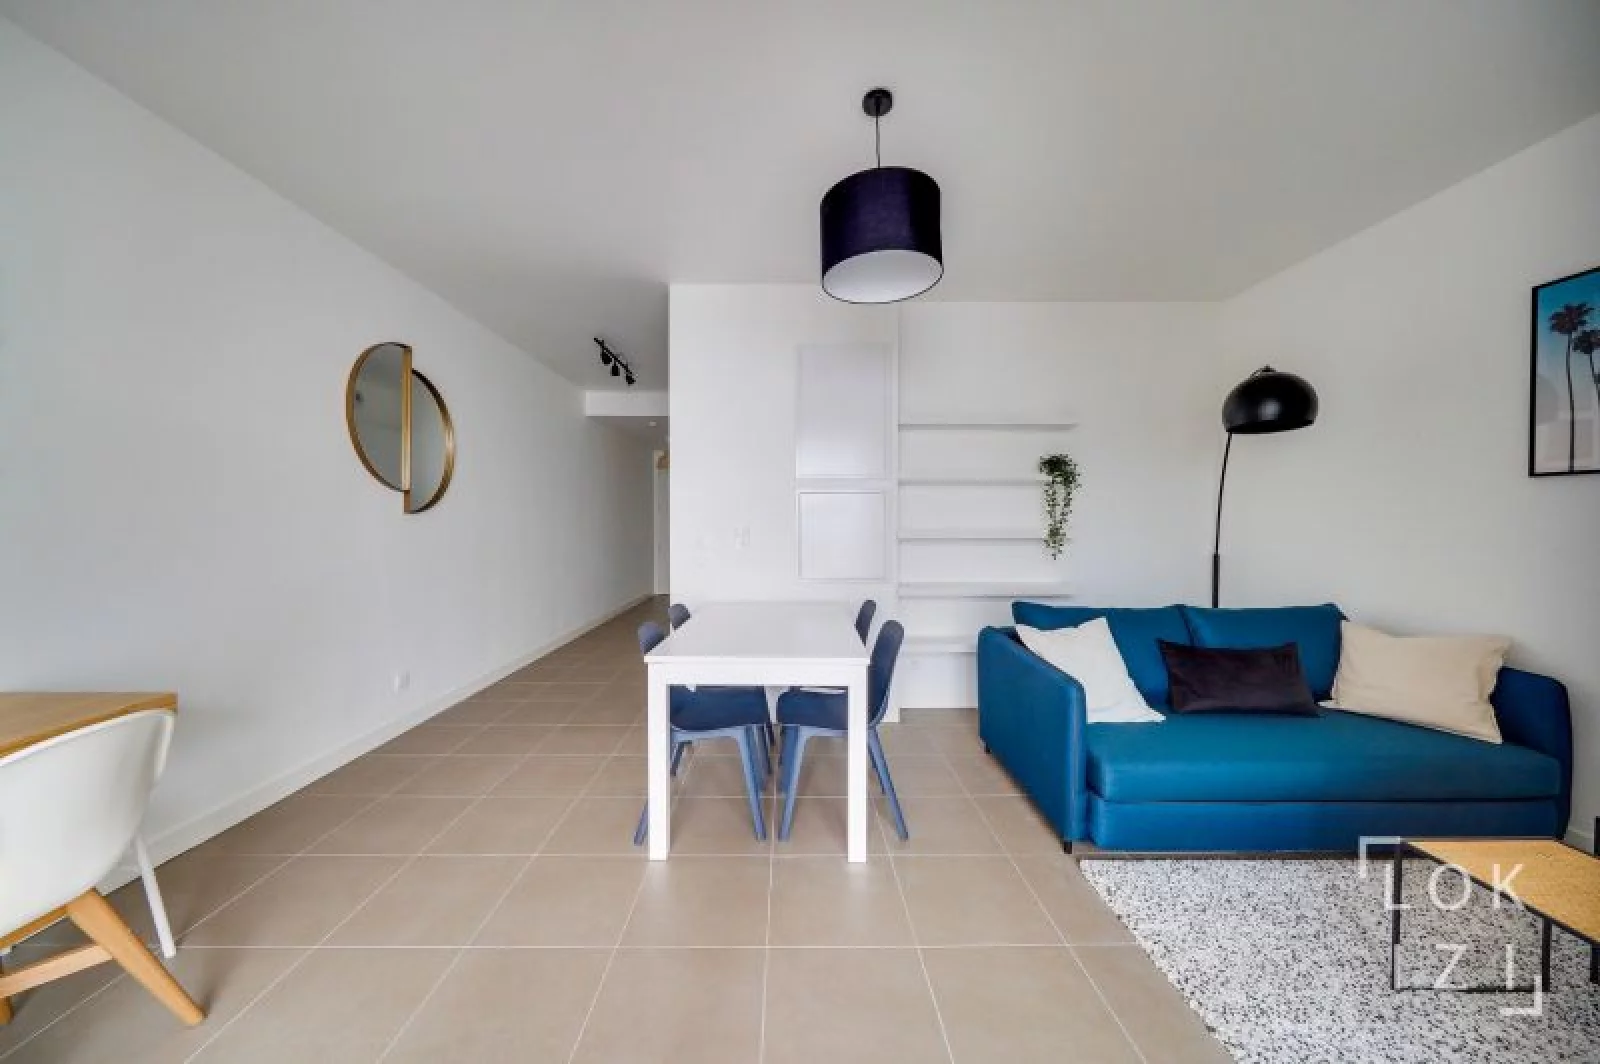 Location appartement meublé 2 pièces 44m²  (Bordeaux- Bacalan)